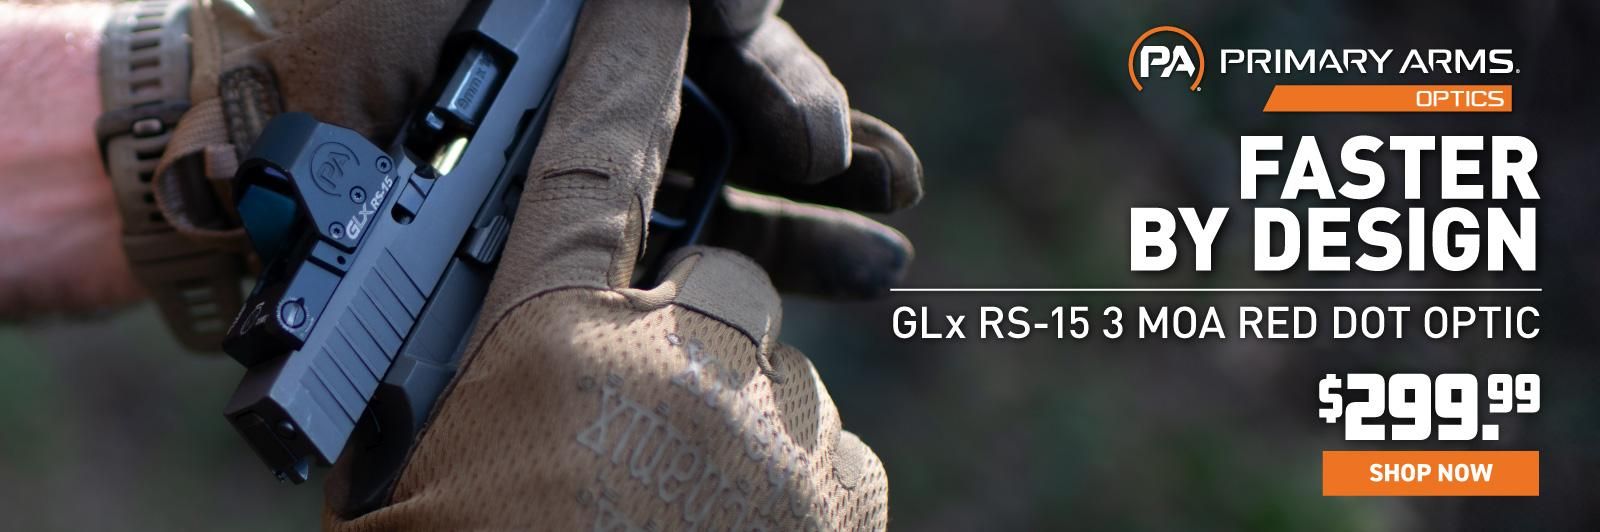 Pre-Order GLx RS-15 3 MOA Mini Reflex Sight